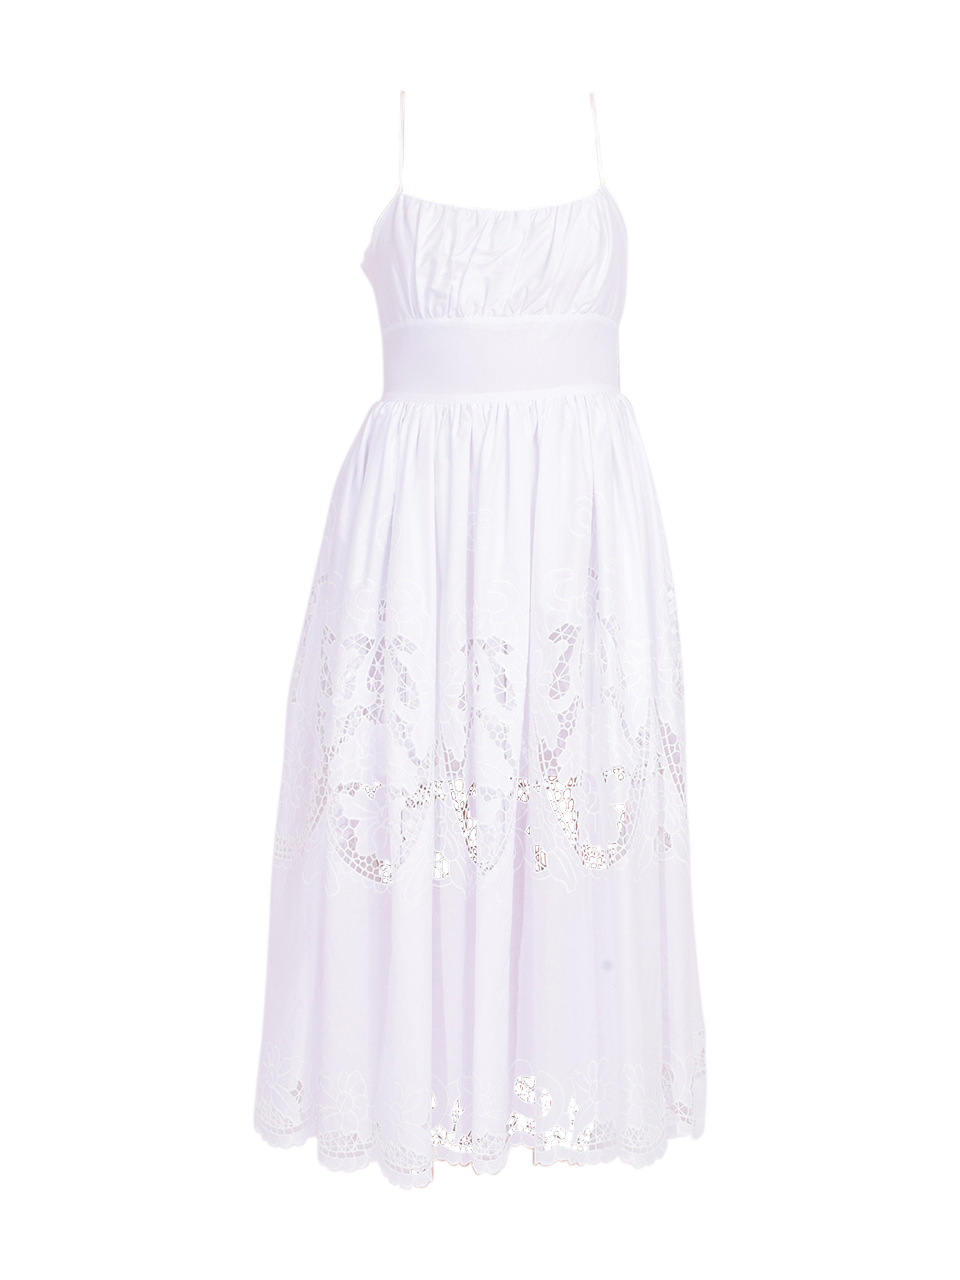 DELFI Lucia Midi Dress in White Product Shot 